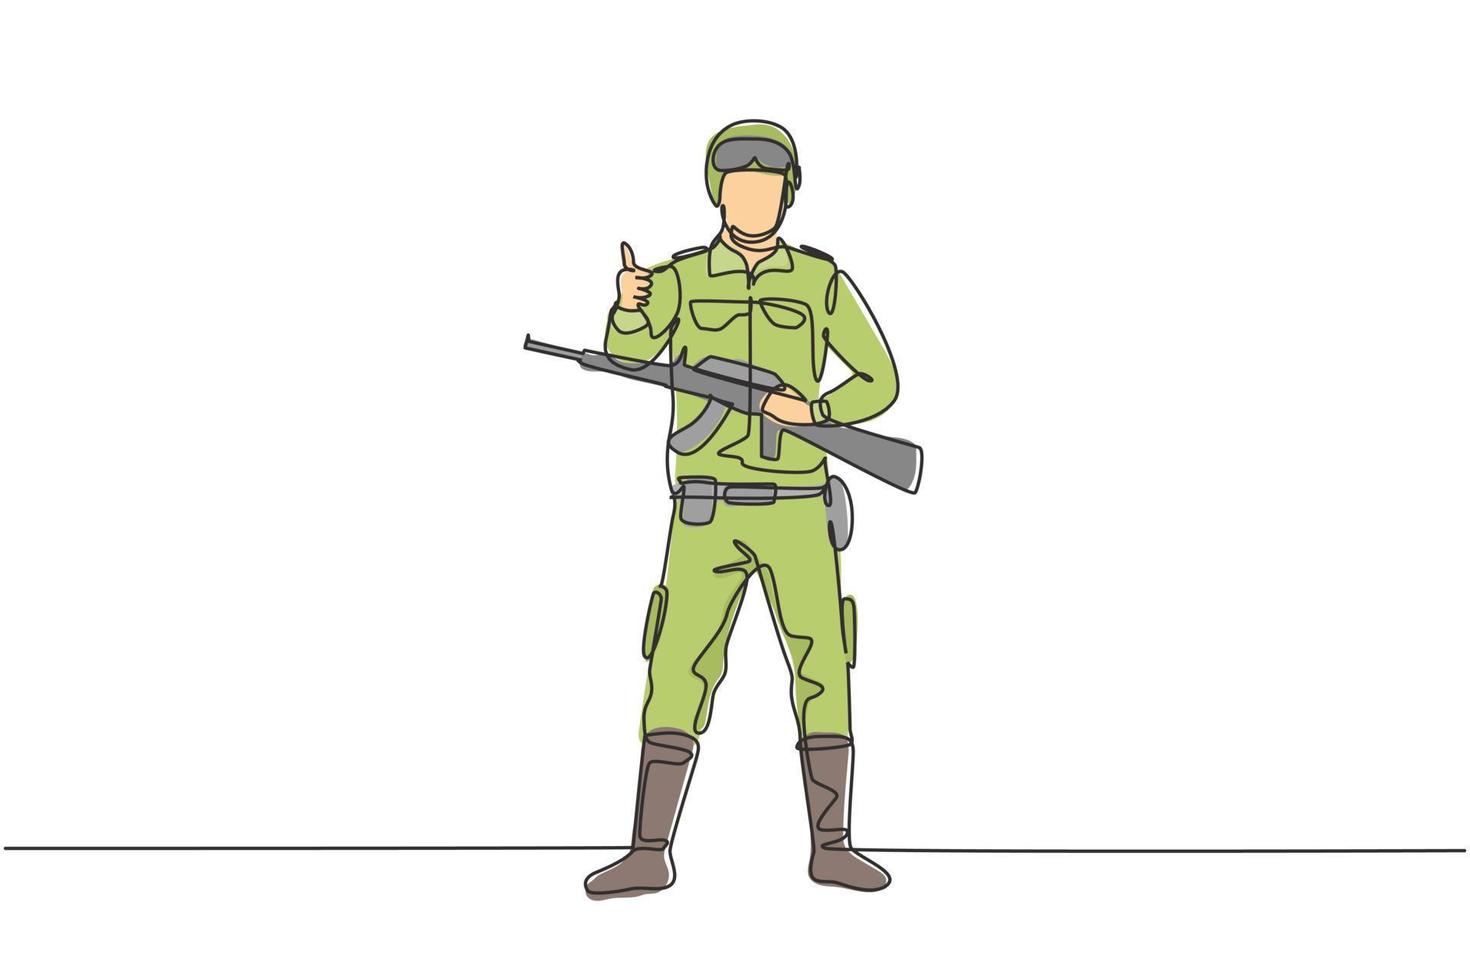 doorlopende soldaten met één lijntekening staan met wapens, volledige uniformen en duimen omhoog die het land dienen met de kracht van strijdkrachten. enkele lijn tekenen ontwerp vector grafische afbeelding